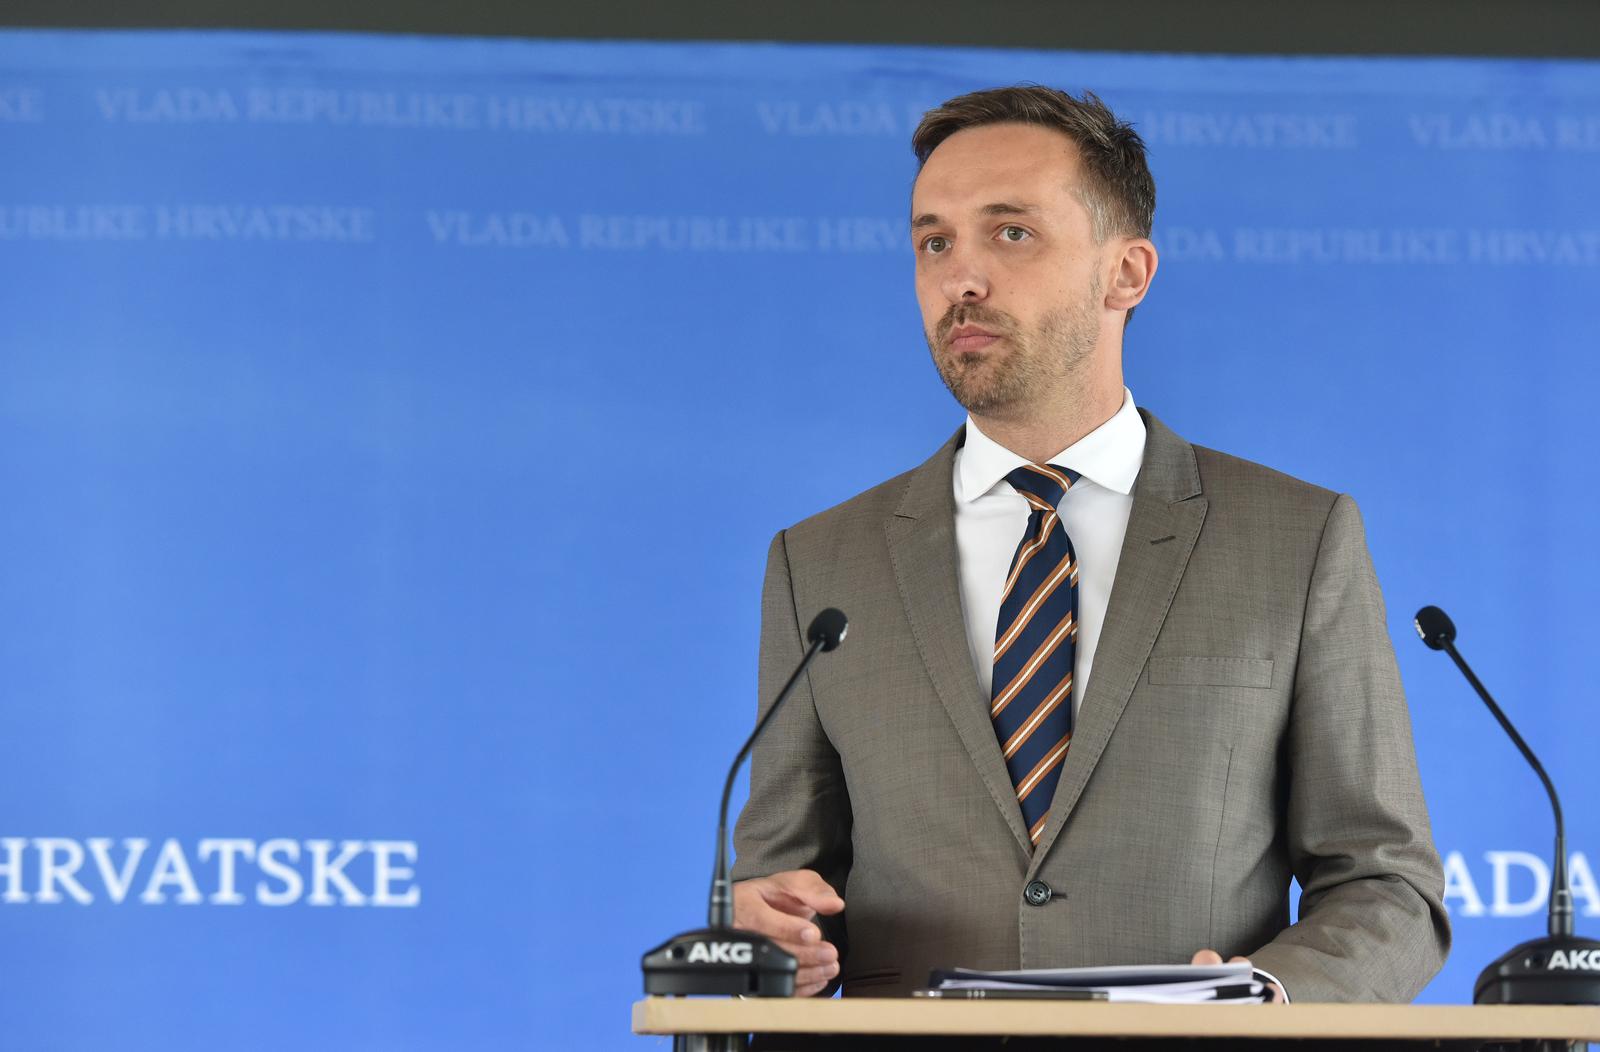 7.7.2022., Zagreb -  U NSK je odrzana sjednica Vlade Republike Hrvatske. Izjave ministara. Photo: Davorin Visnjic/PIXSELL